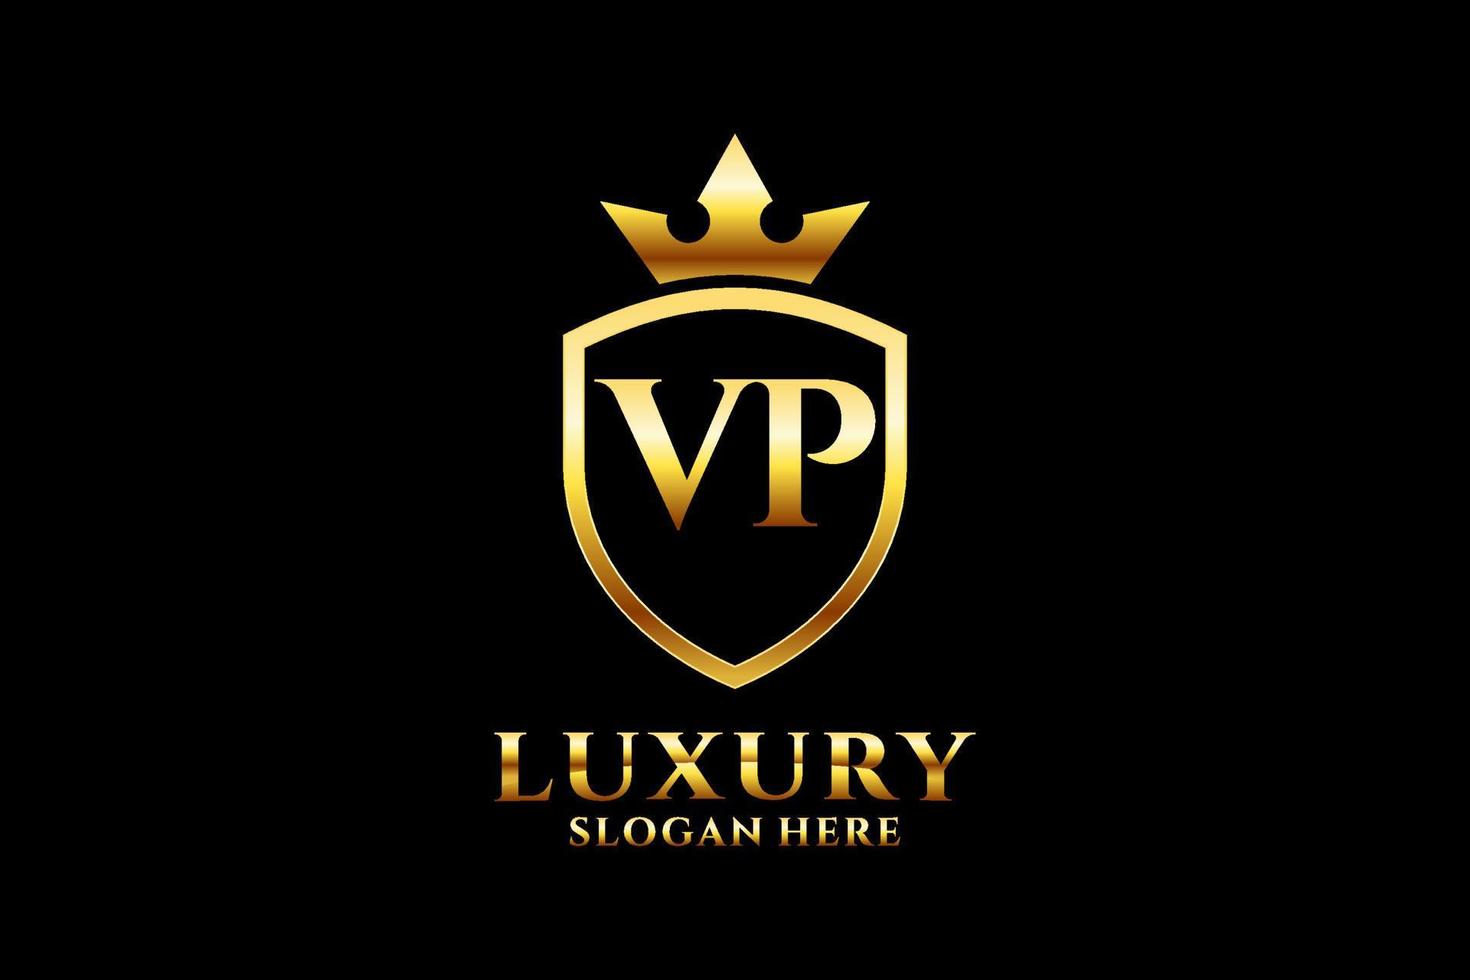 Initial vp elegantes Luxus-Monogramm-Logo oder Abzeichen-Vorlage mit Schriftrollen und Königskrone – perfekt für luxuriöse Branding-Projekte vektor